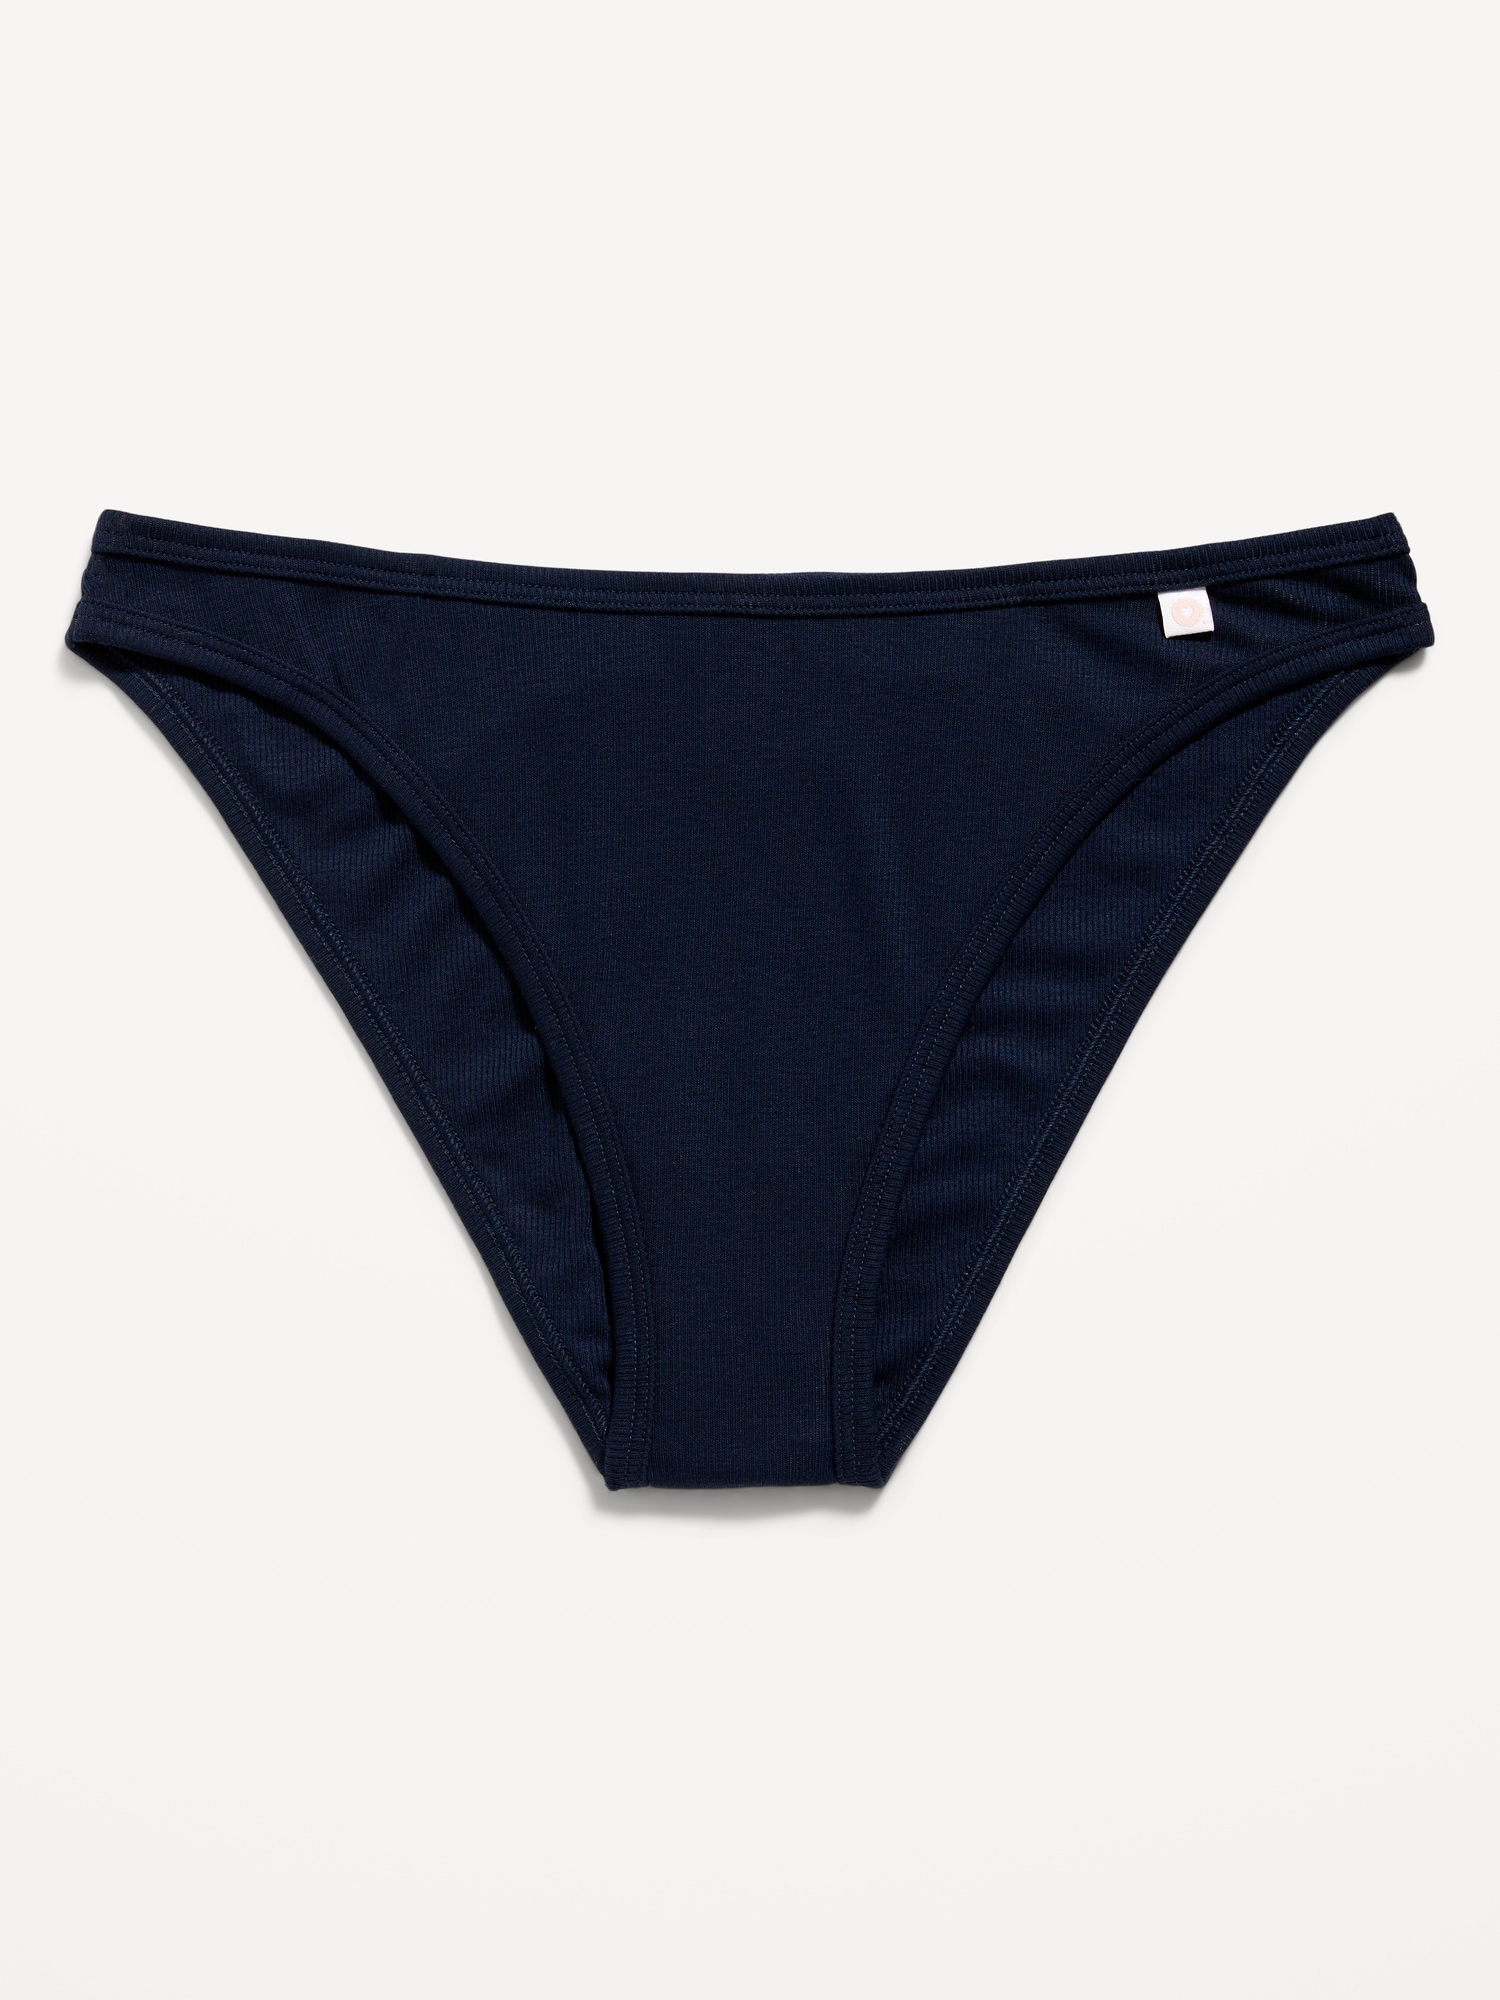 Navy Blue Panties -  Canada